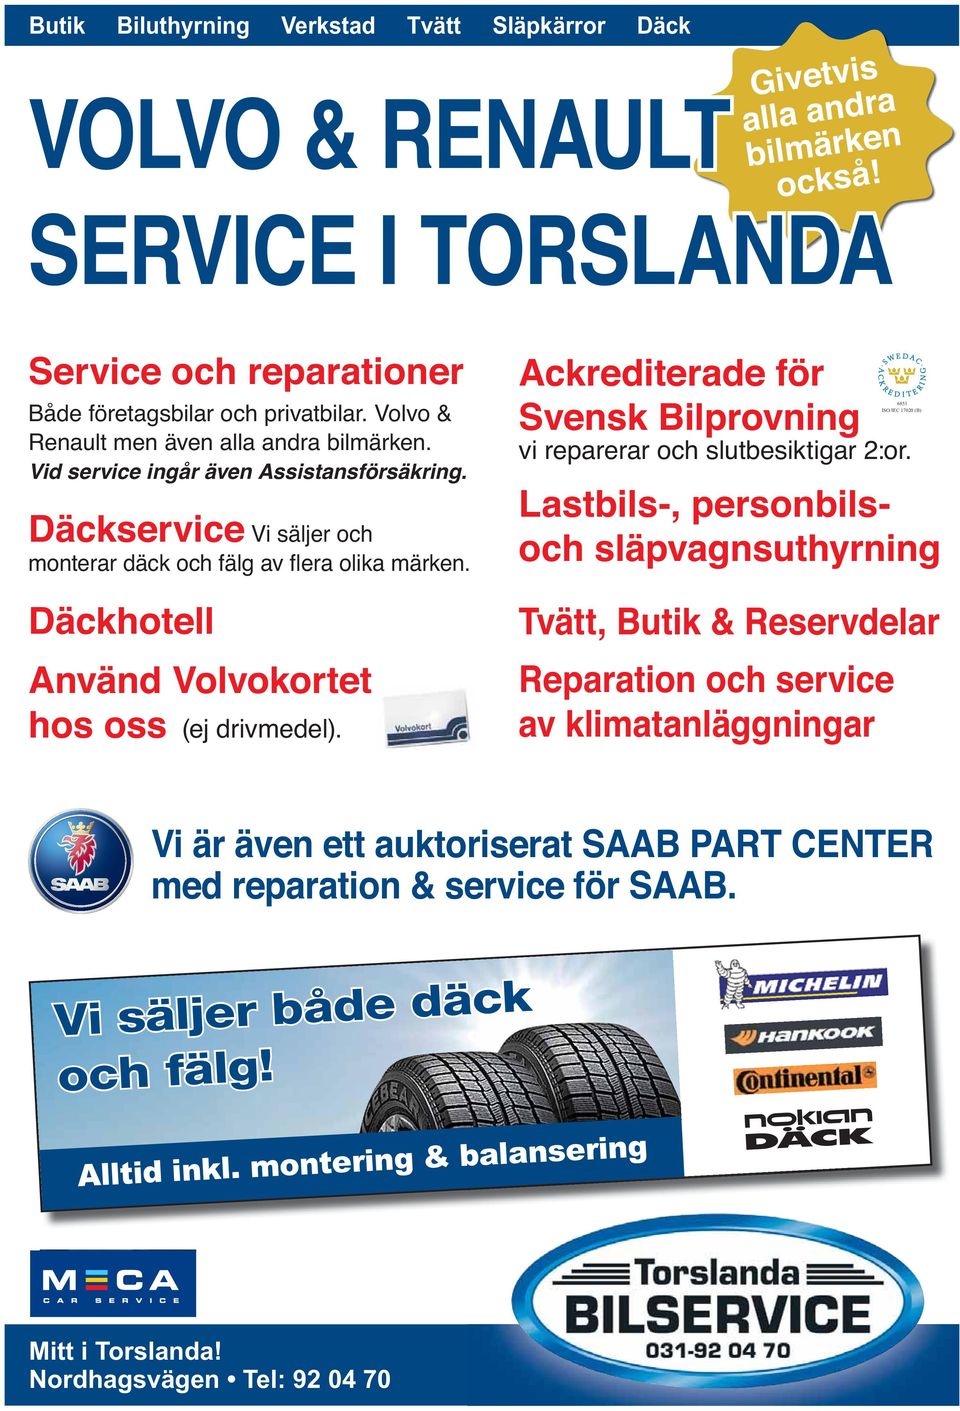 Ackrediterade för Svensk Bilprovning vi reparerar och slutbesiktigar 2:or.